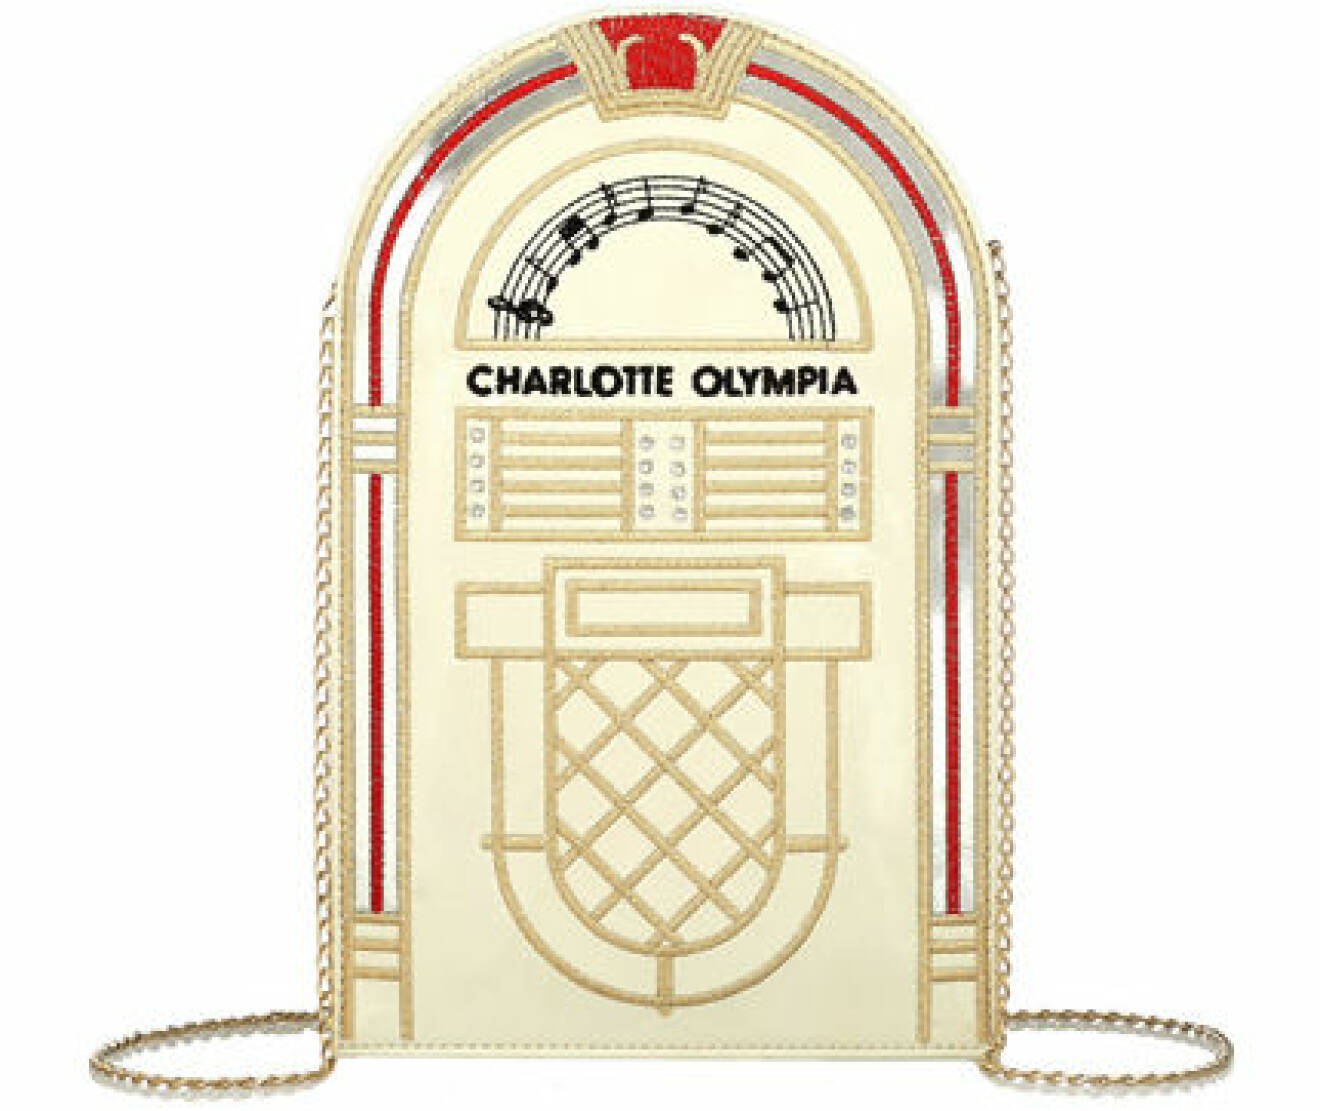 Väska, 3810 kr, Chalotte Olympia Net-a-porter.com